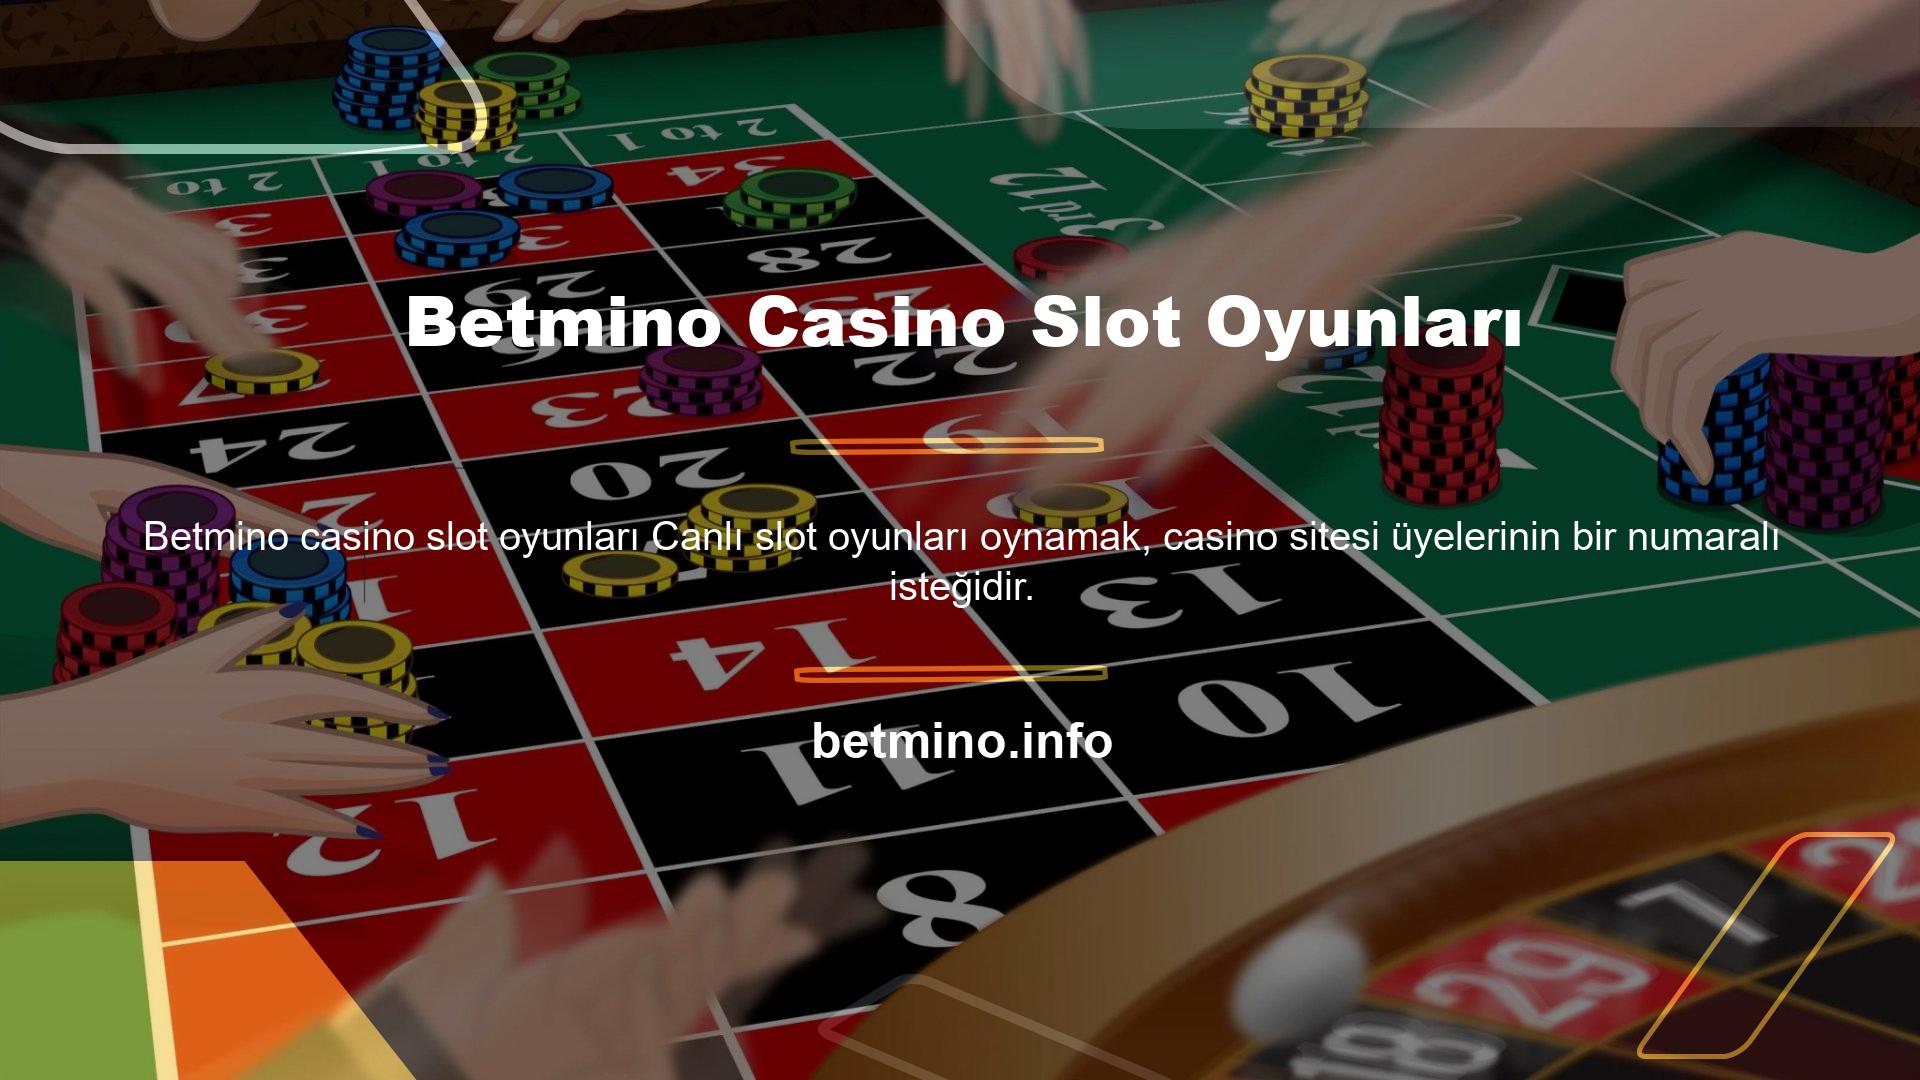 Casino slot sitelerinde oynanan oyunlar arasında poker, bakara, rulet ve blackjack gibi tüm ünlü slot oyunları yer almaktadır